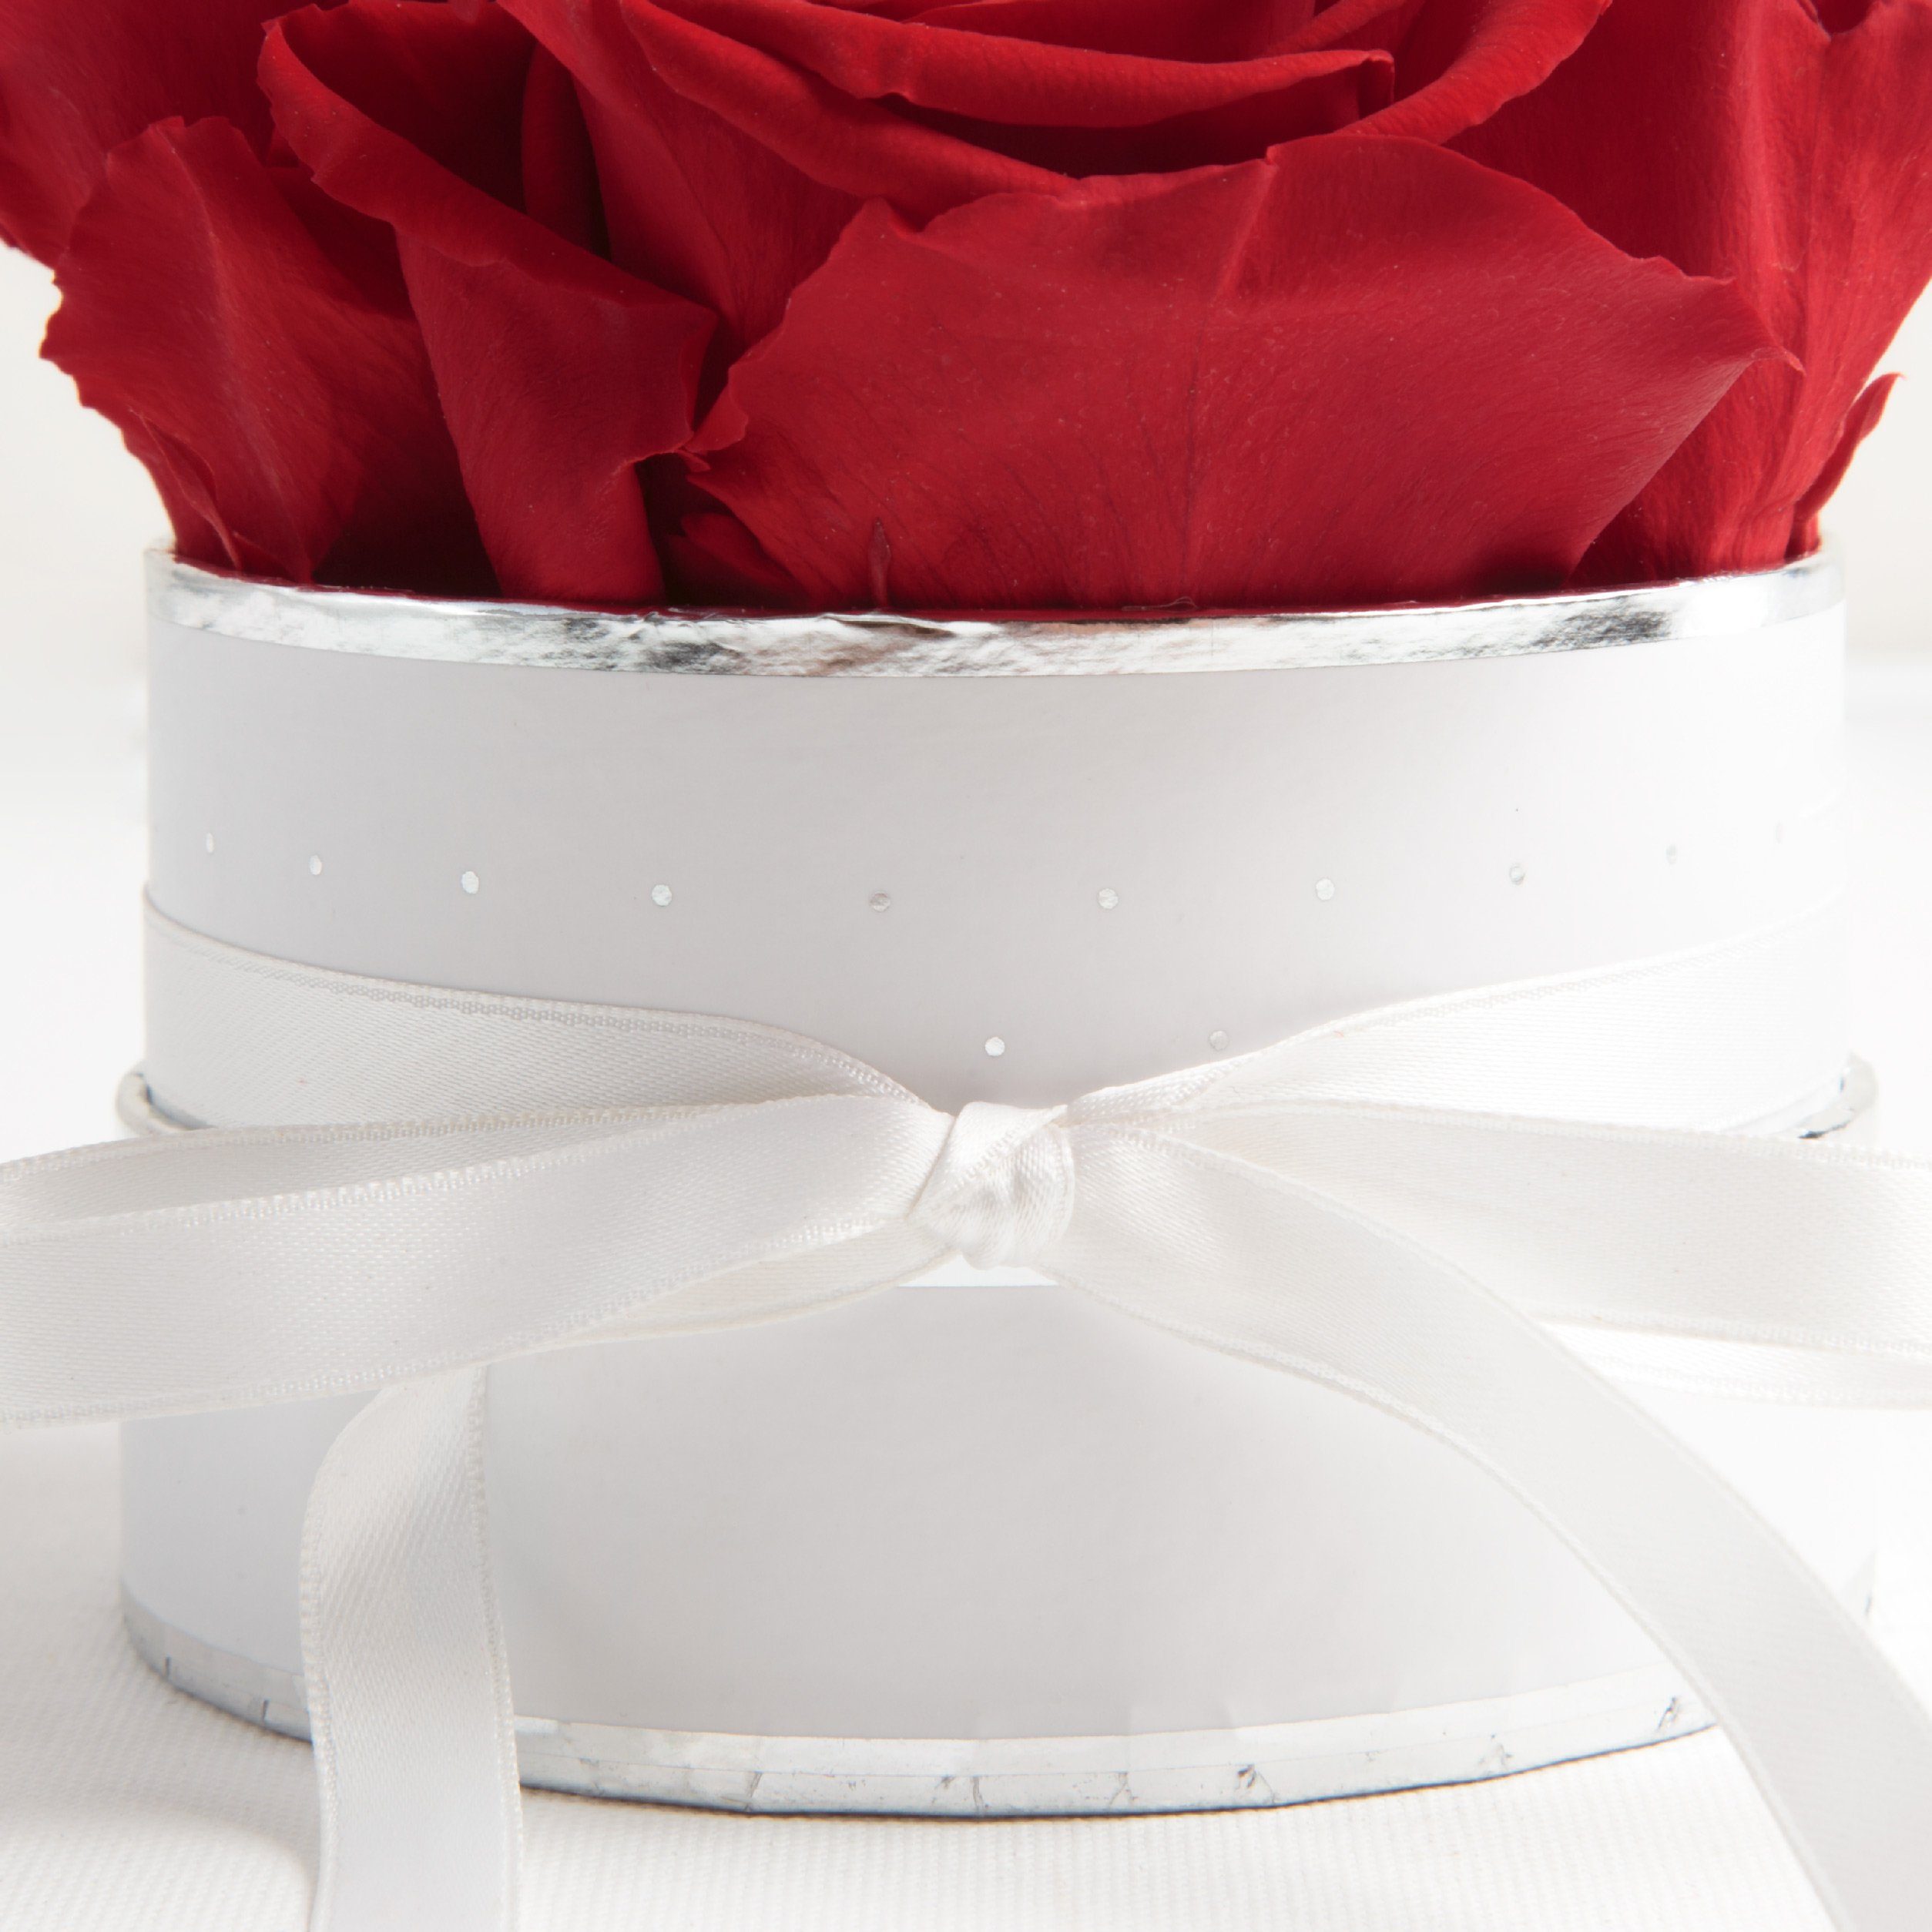 10 cm, konservierte rund inklusiv haltbar Höhe 3 Heidelberg, 4 Rosen Rose, Rosen Rosenbox echte Kunstblume SCHULZ Rot ROSEMARIE weiß Infinity Jahre Geschenkbox